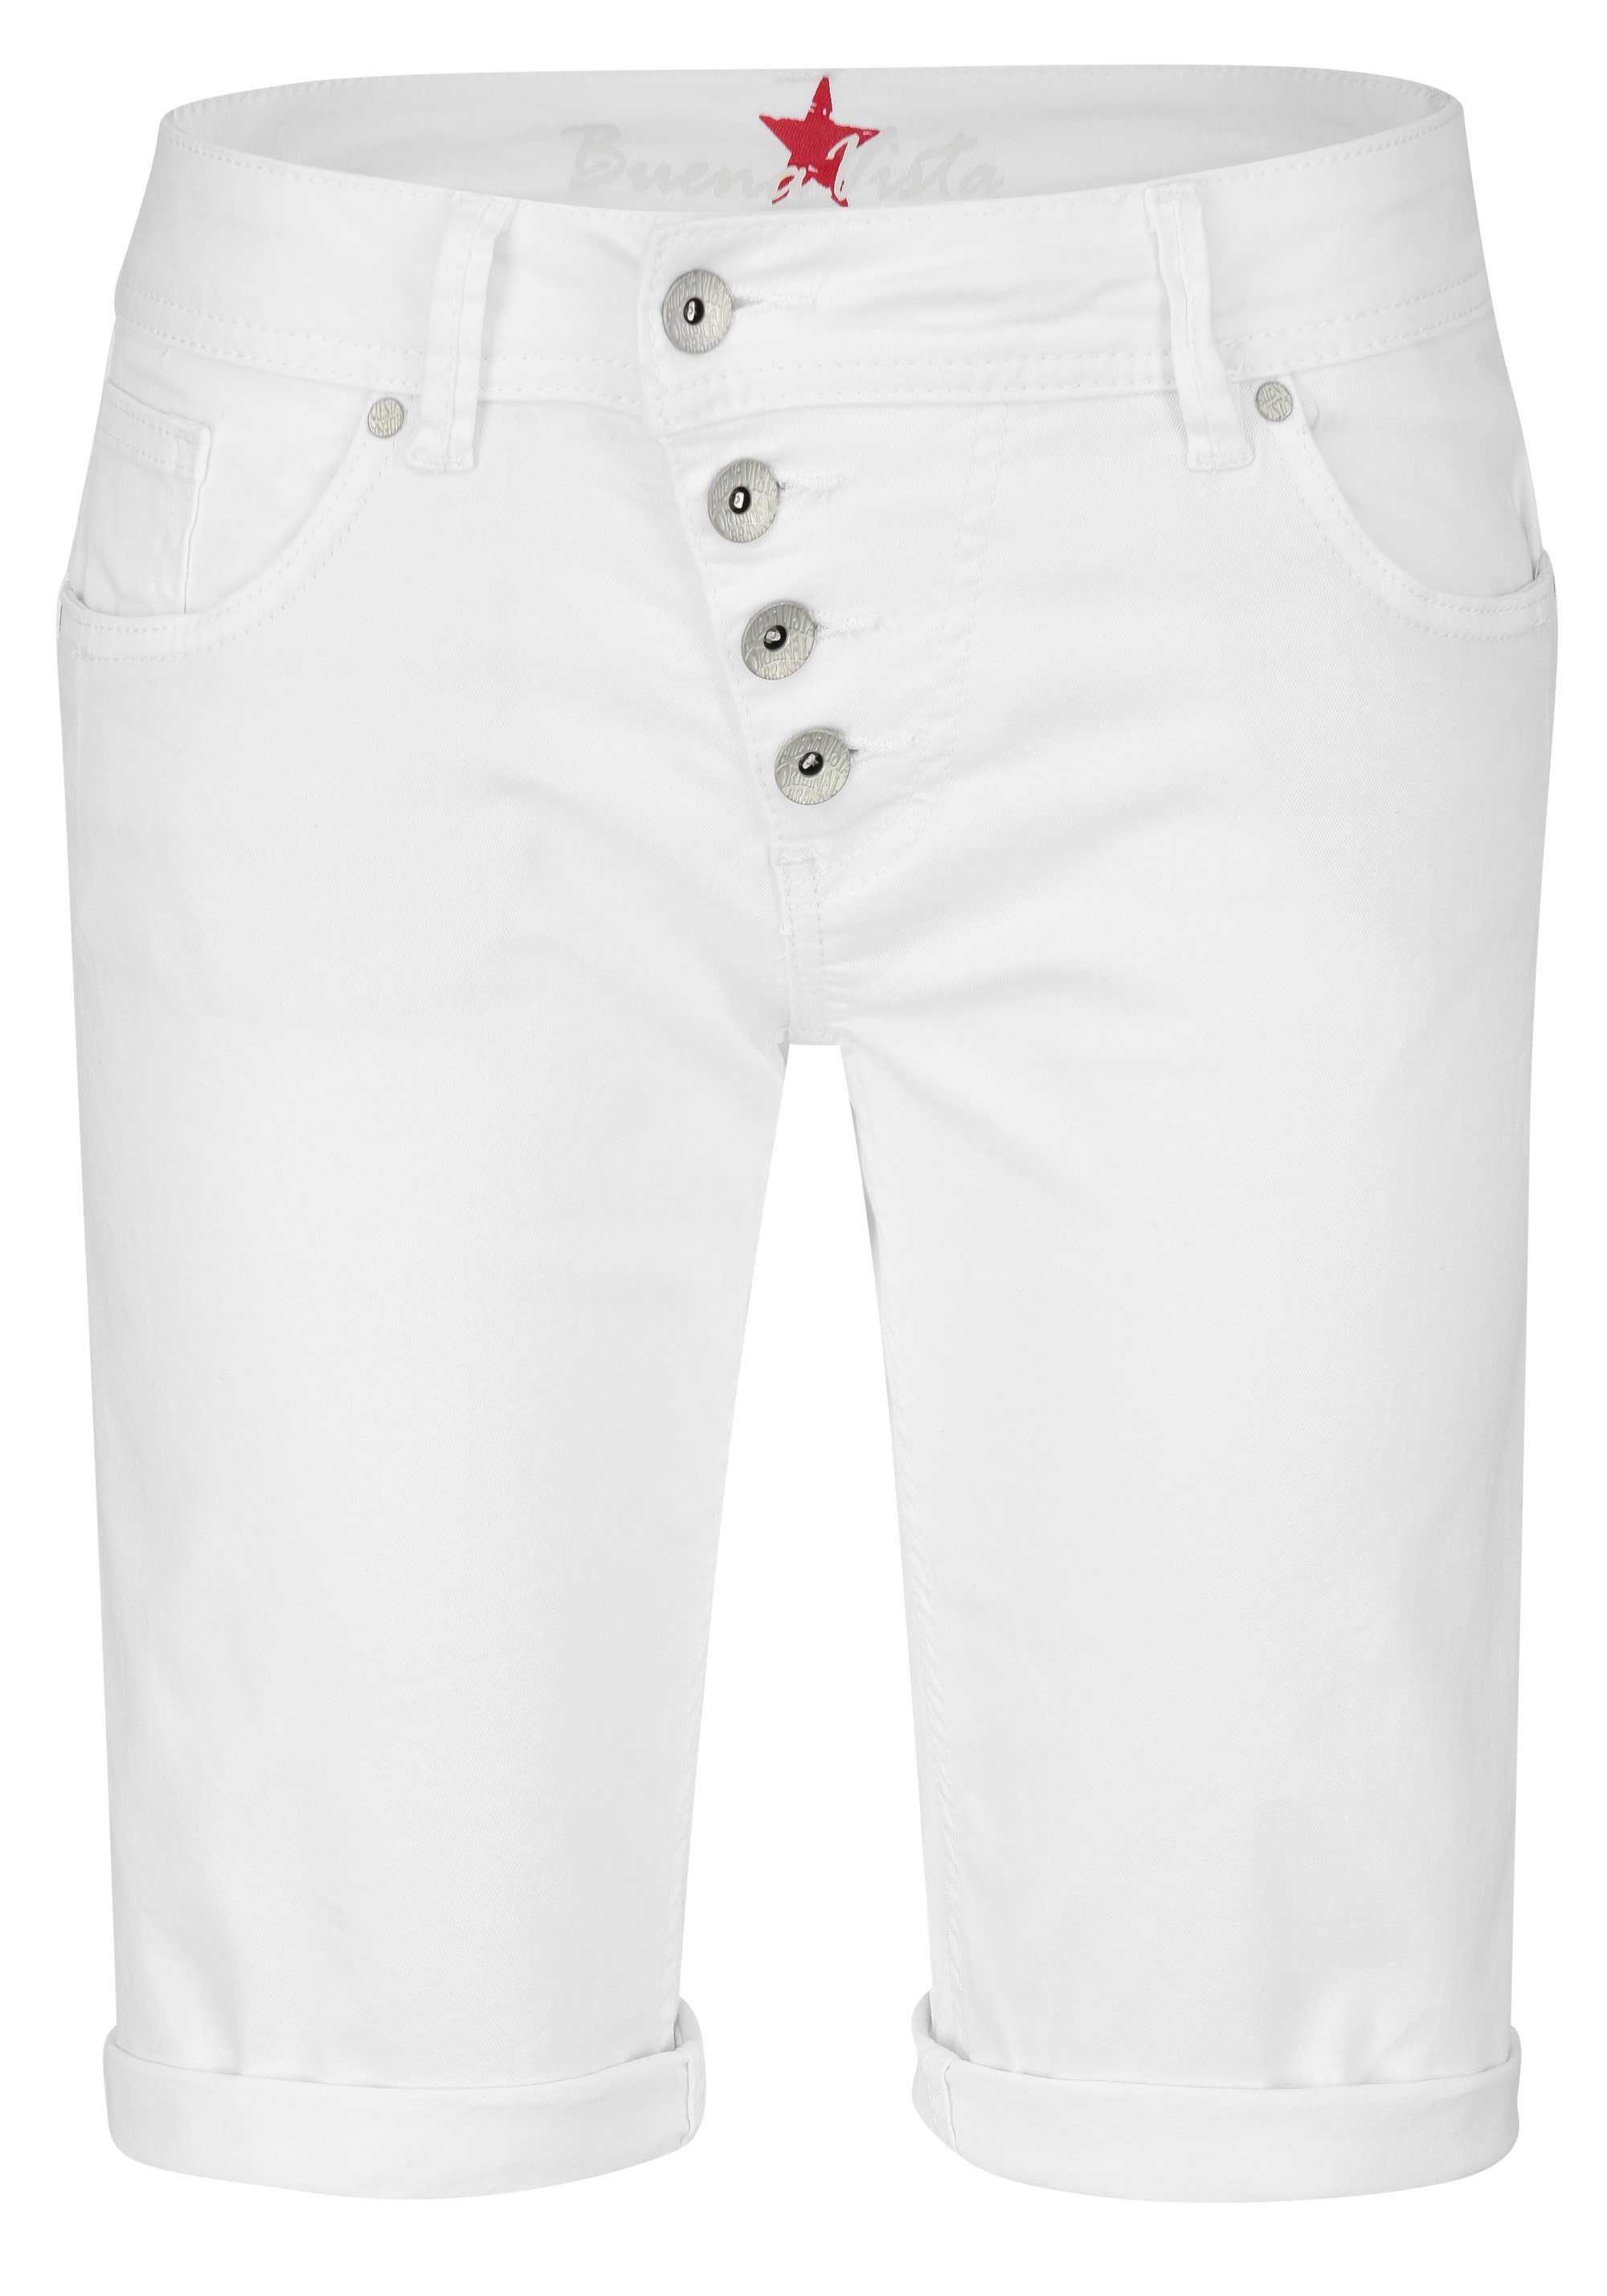 Buena Vista Stretch-Jeans BUENA VISTA MALIBU SHORT clean white 2104 J5025 502.032 - Stretch